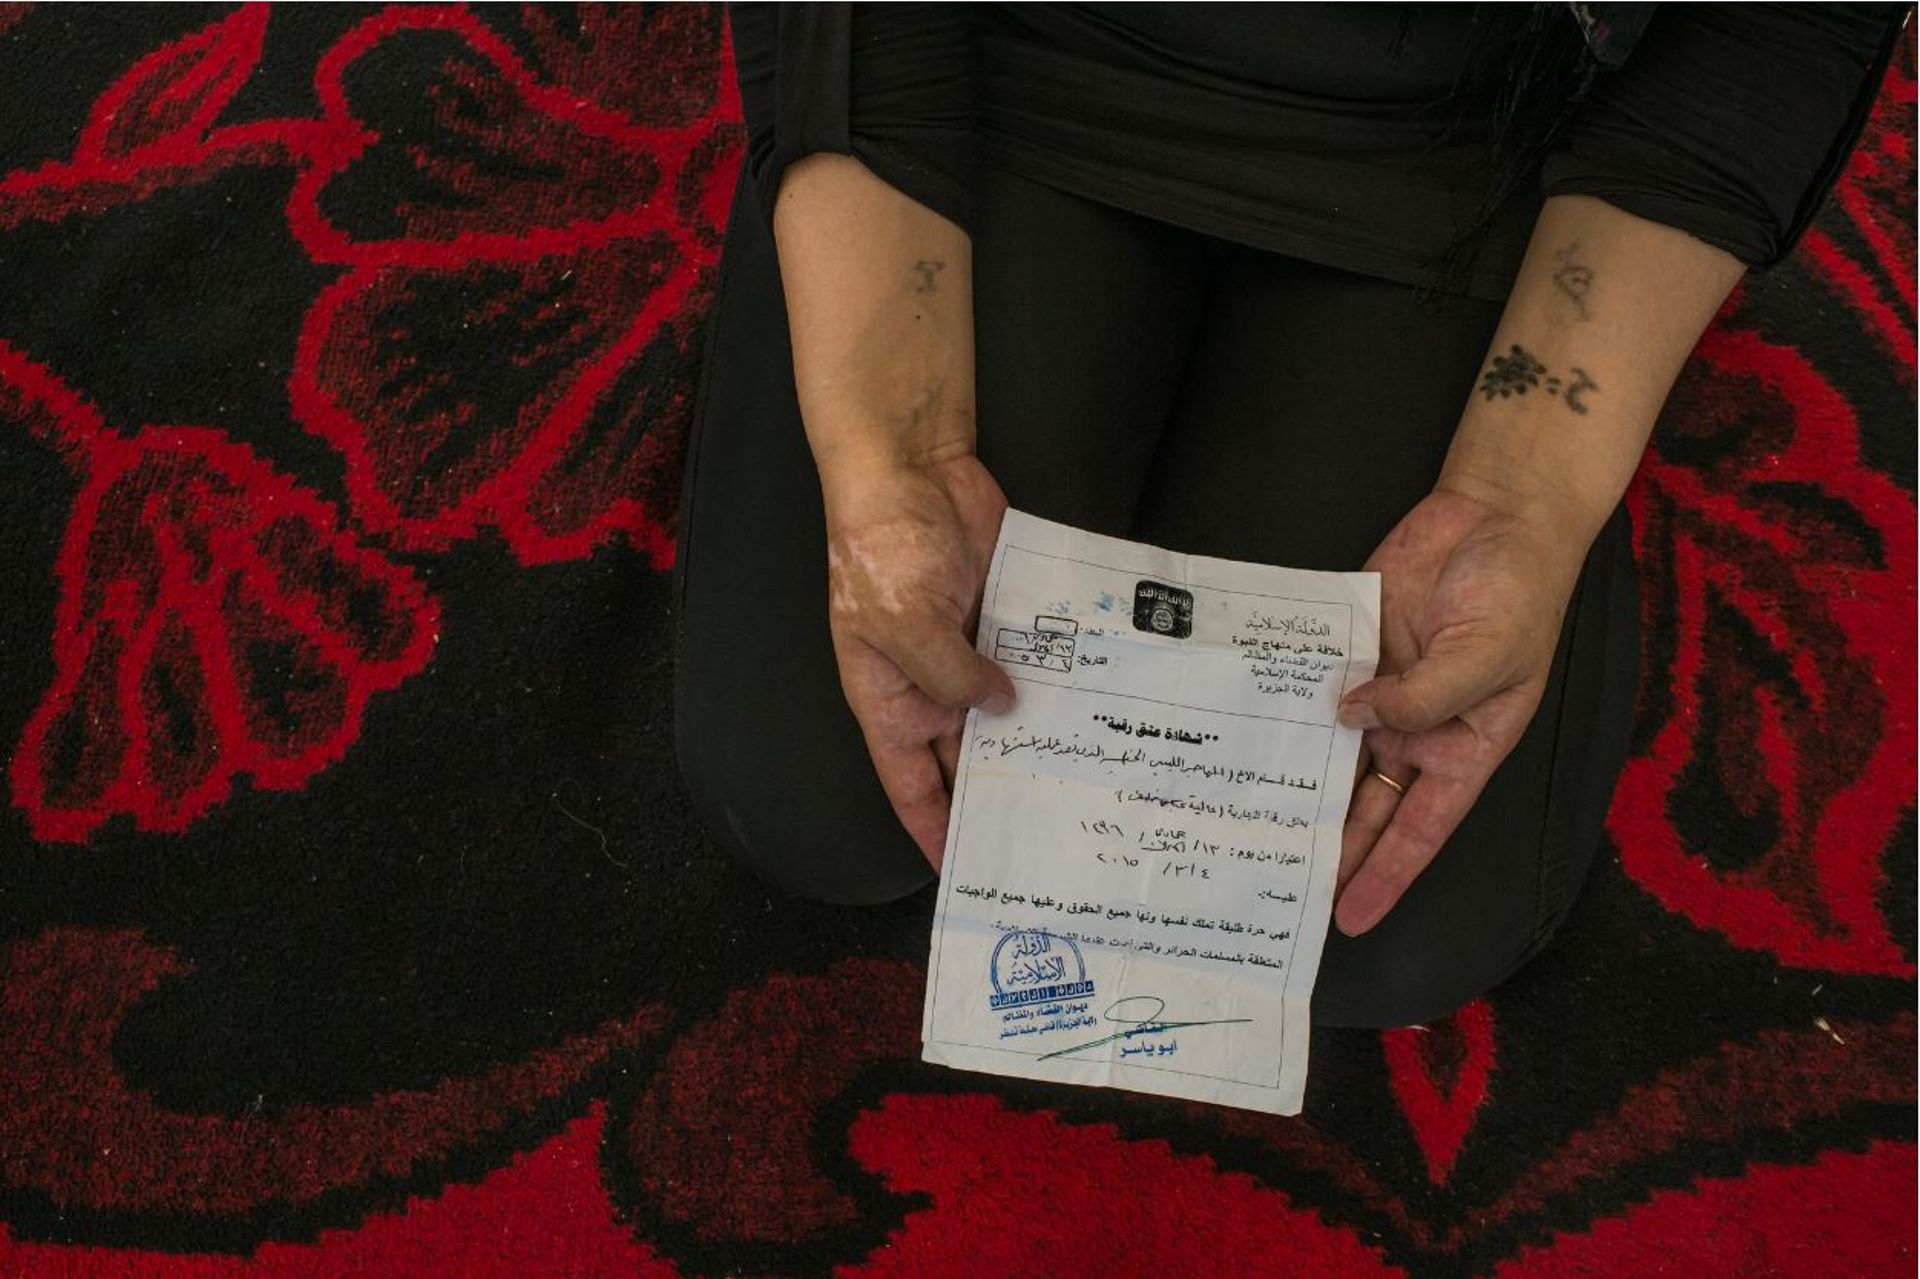 Une femme Yazidi de 25 ans a montré son " Certificat d’Emancipation " que lui avait remis le Libyen qui l’avait transformée en esclave. Il expliqua qu’il avait terminé son entrainement comme kamikaze et qu’il prévoyait de se faire exploser, et donc, la li